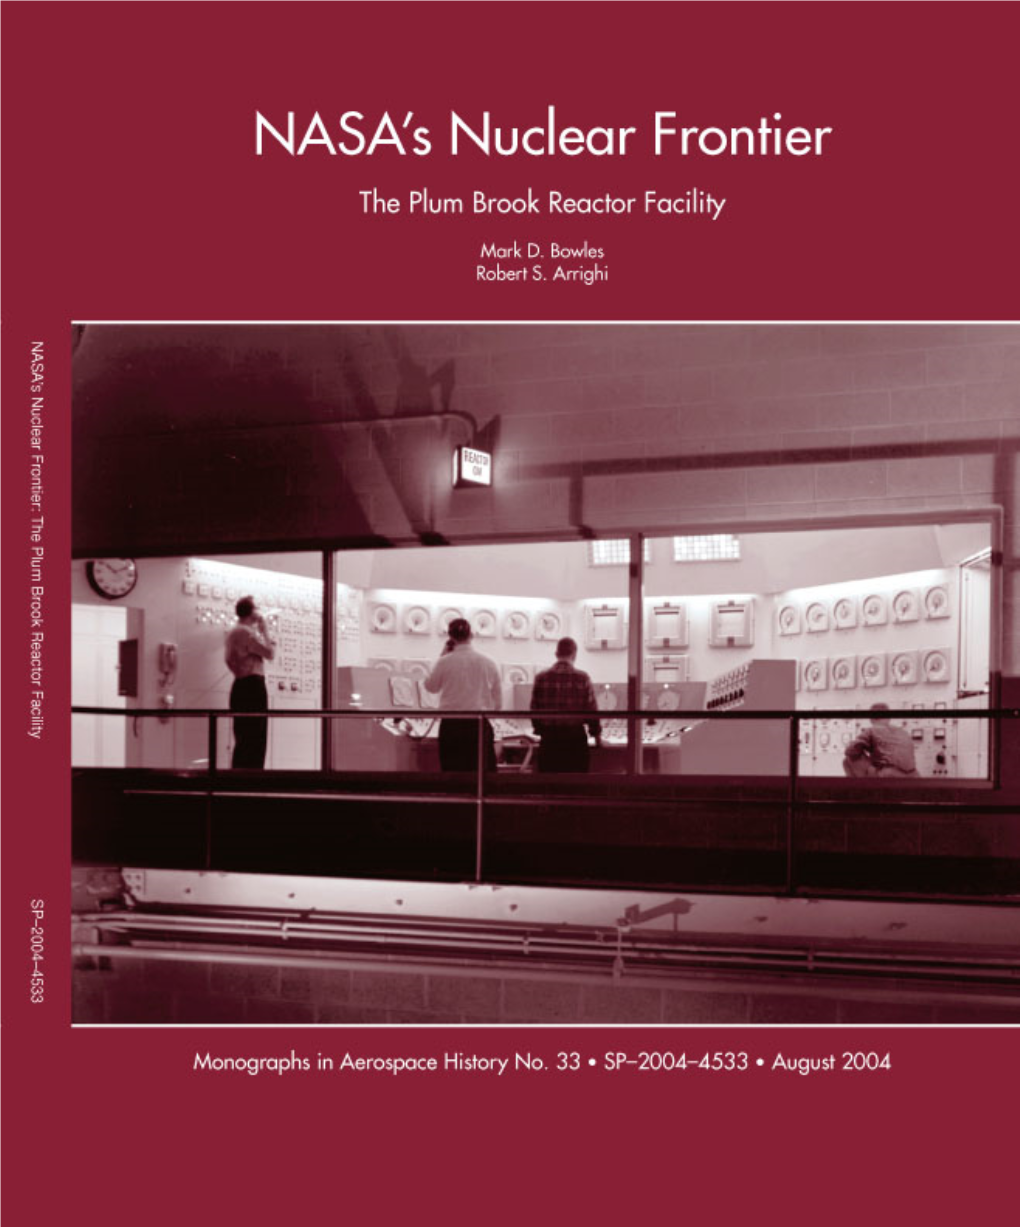 The Plum Brook Reactor Facility NASA’S Nuclear Frontier the Plum Brook Reactor Facility, 1941—2002